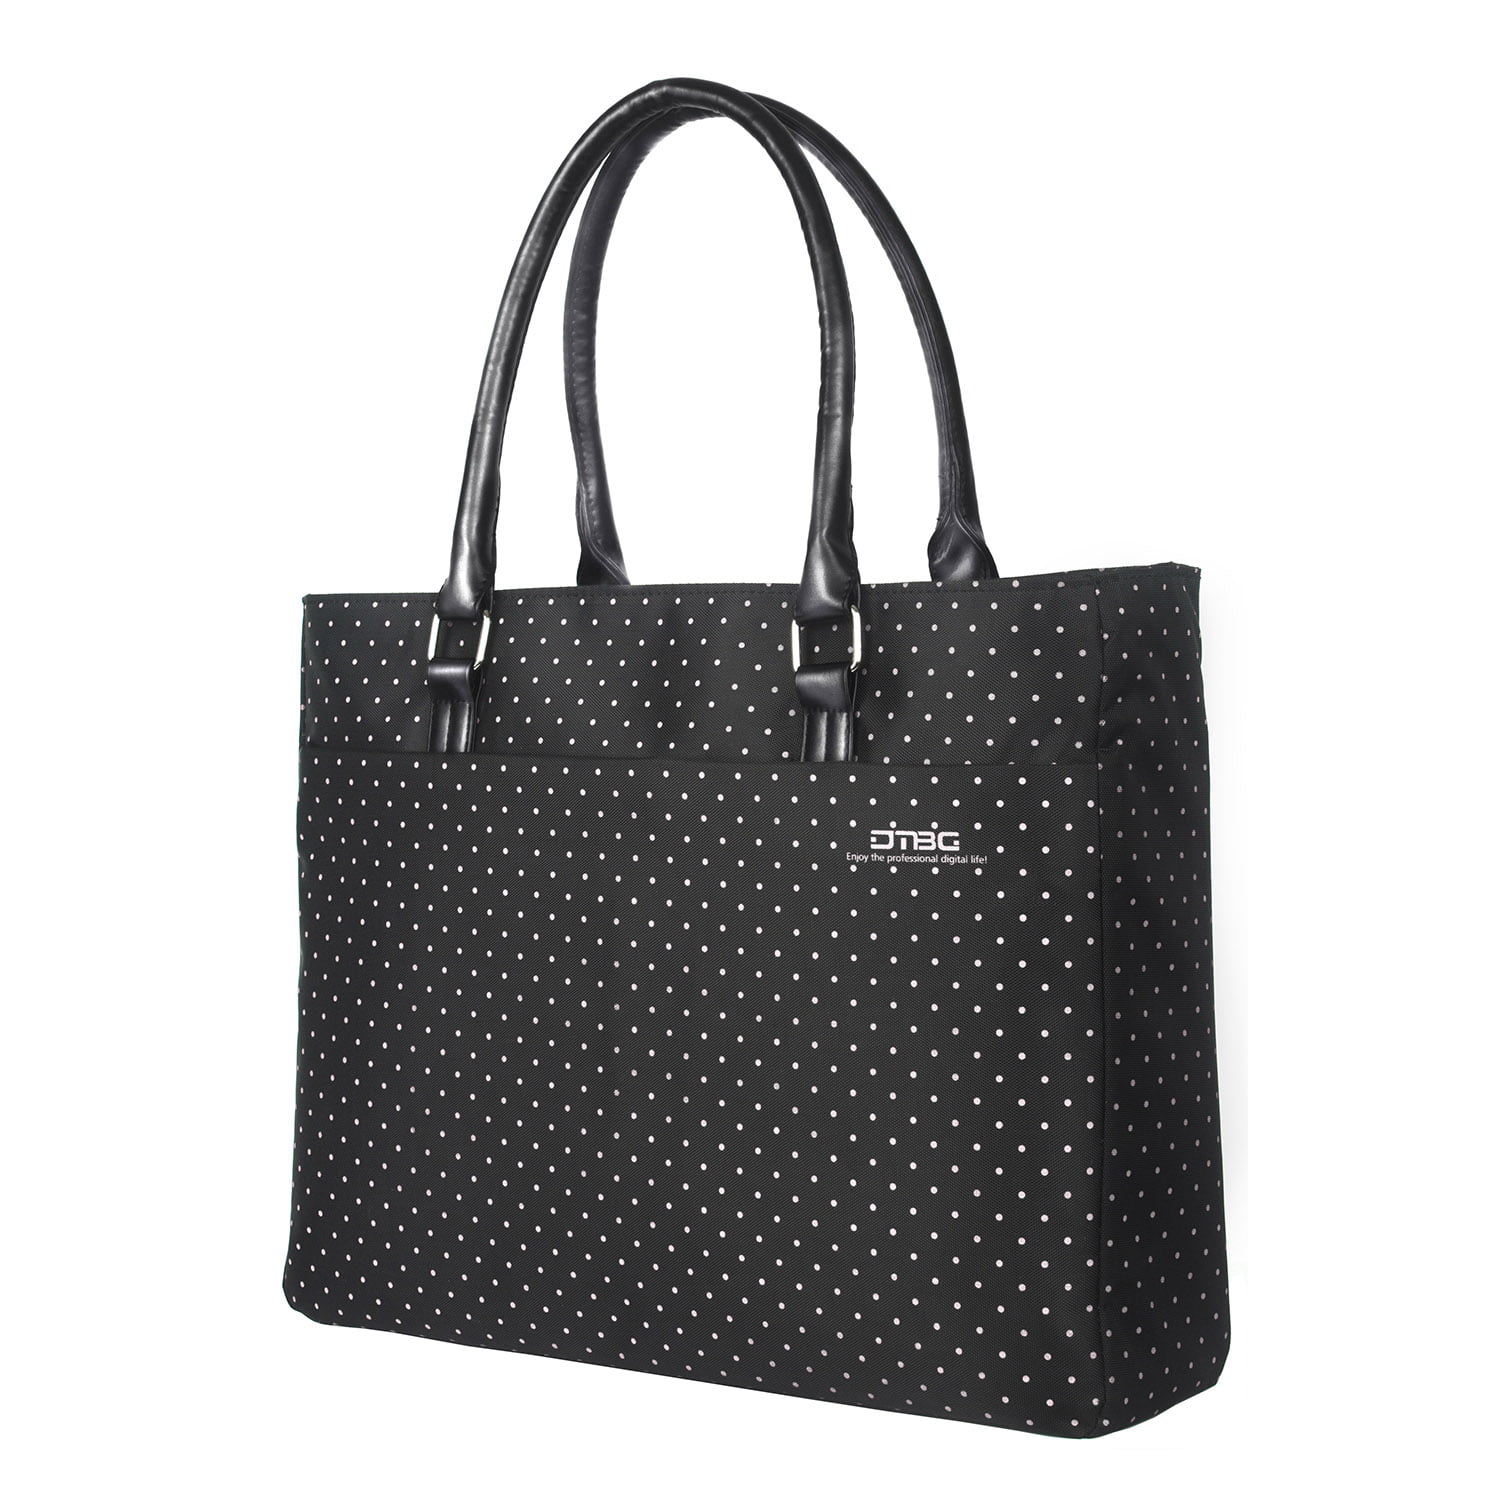 Black+Pink Dot DTBG Laptop Tote Bag 15.6 Inch Women Shoulder Bag Nylon Briefcase Casual Handbag Laptop Case for 15-15.15 Inch Tablet/Ultra-Book/MacBook/Chromebook